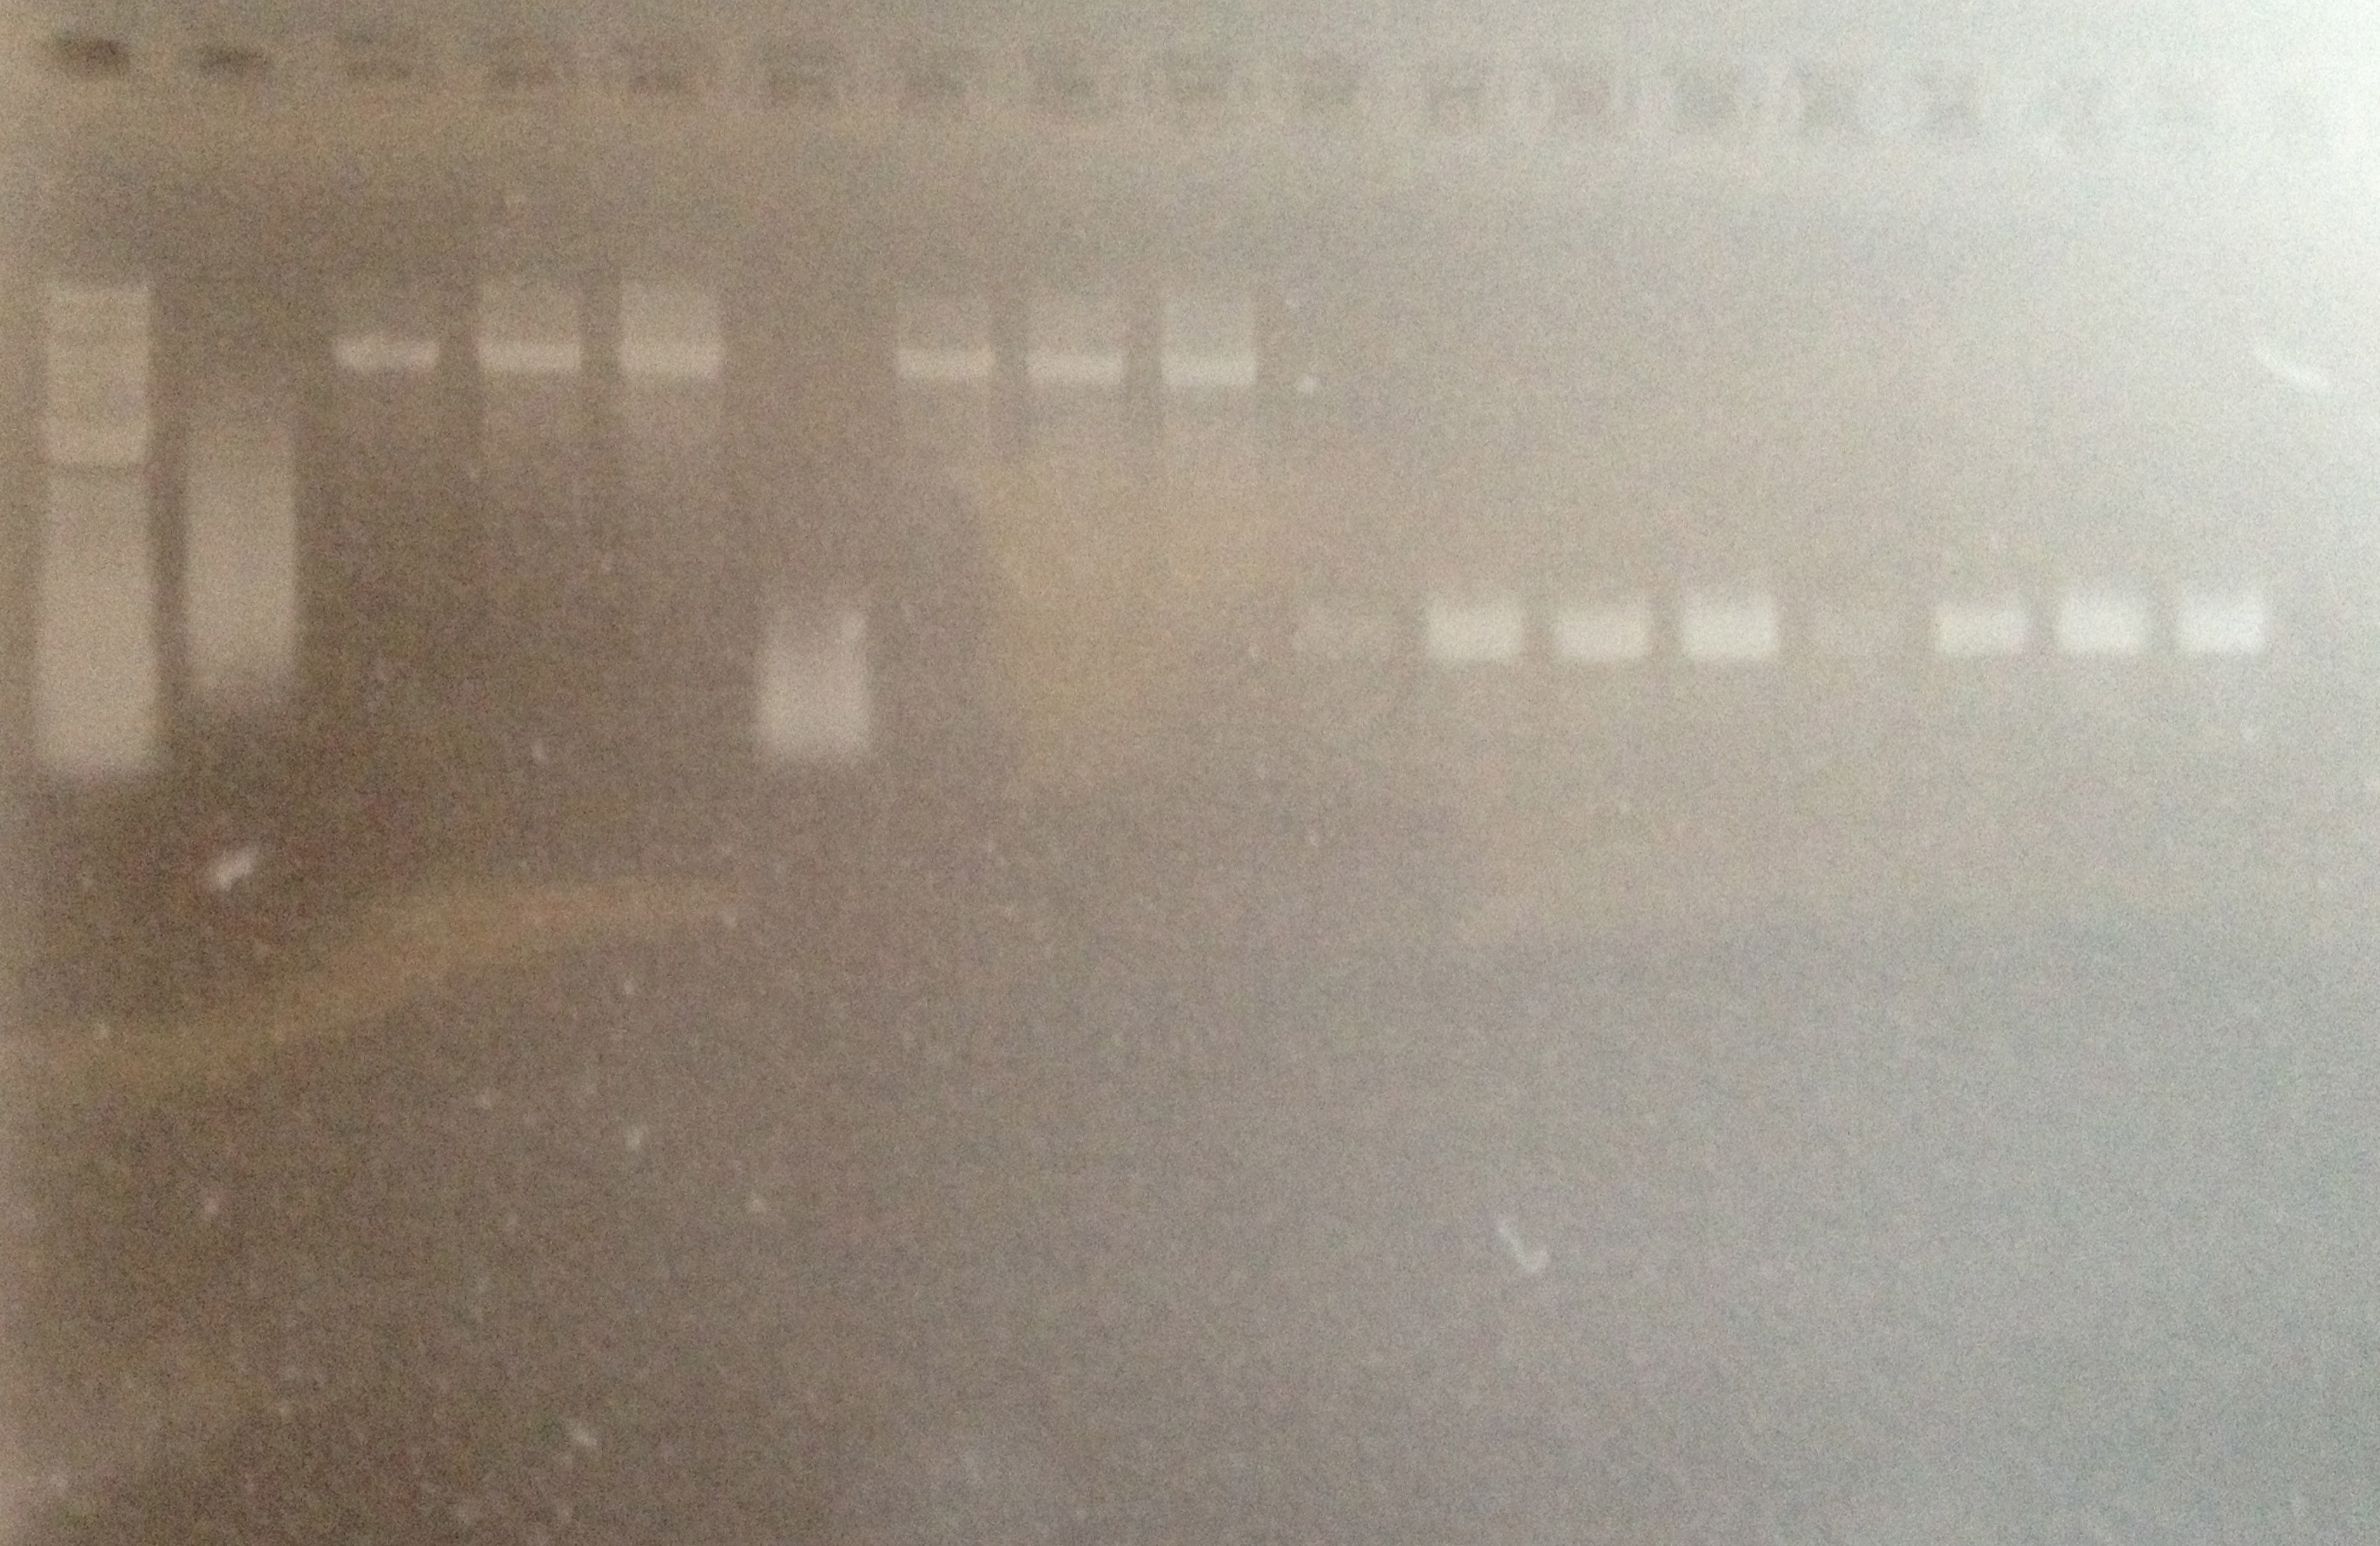 DUKE 5-30-13.PCR gRNA-Z4EV Att8.jpg